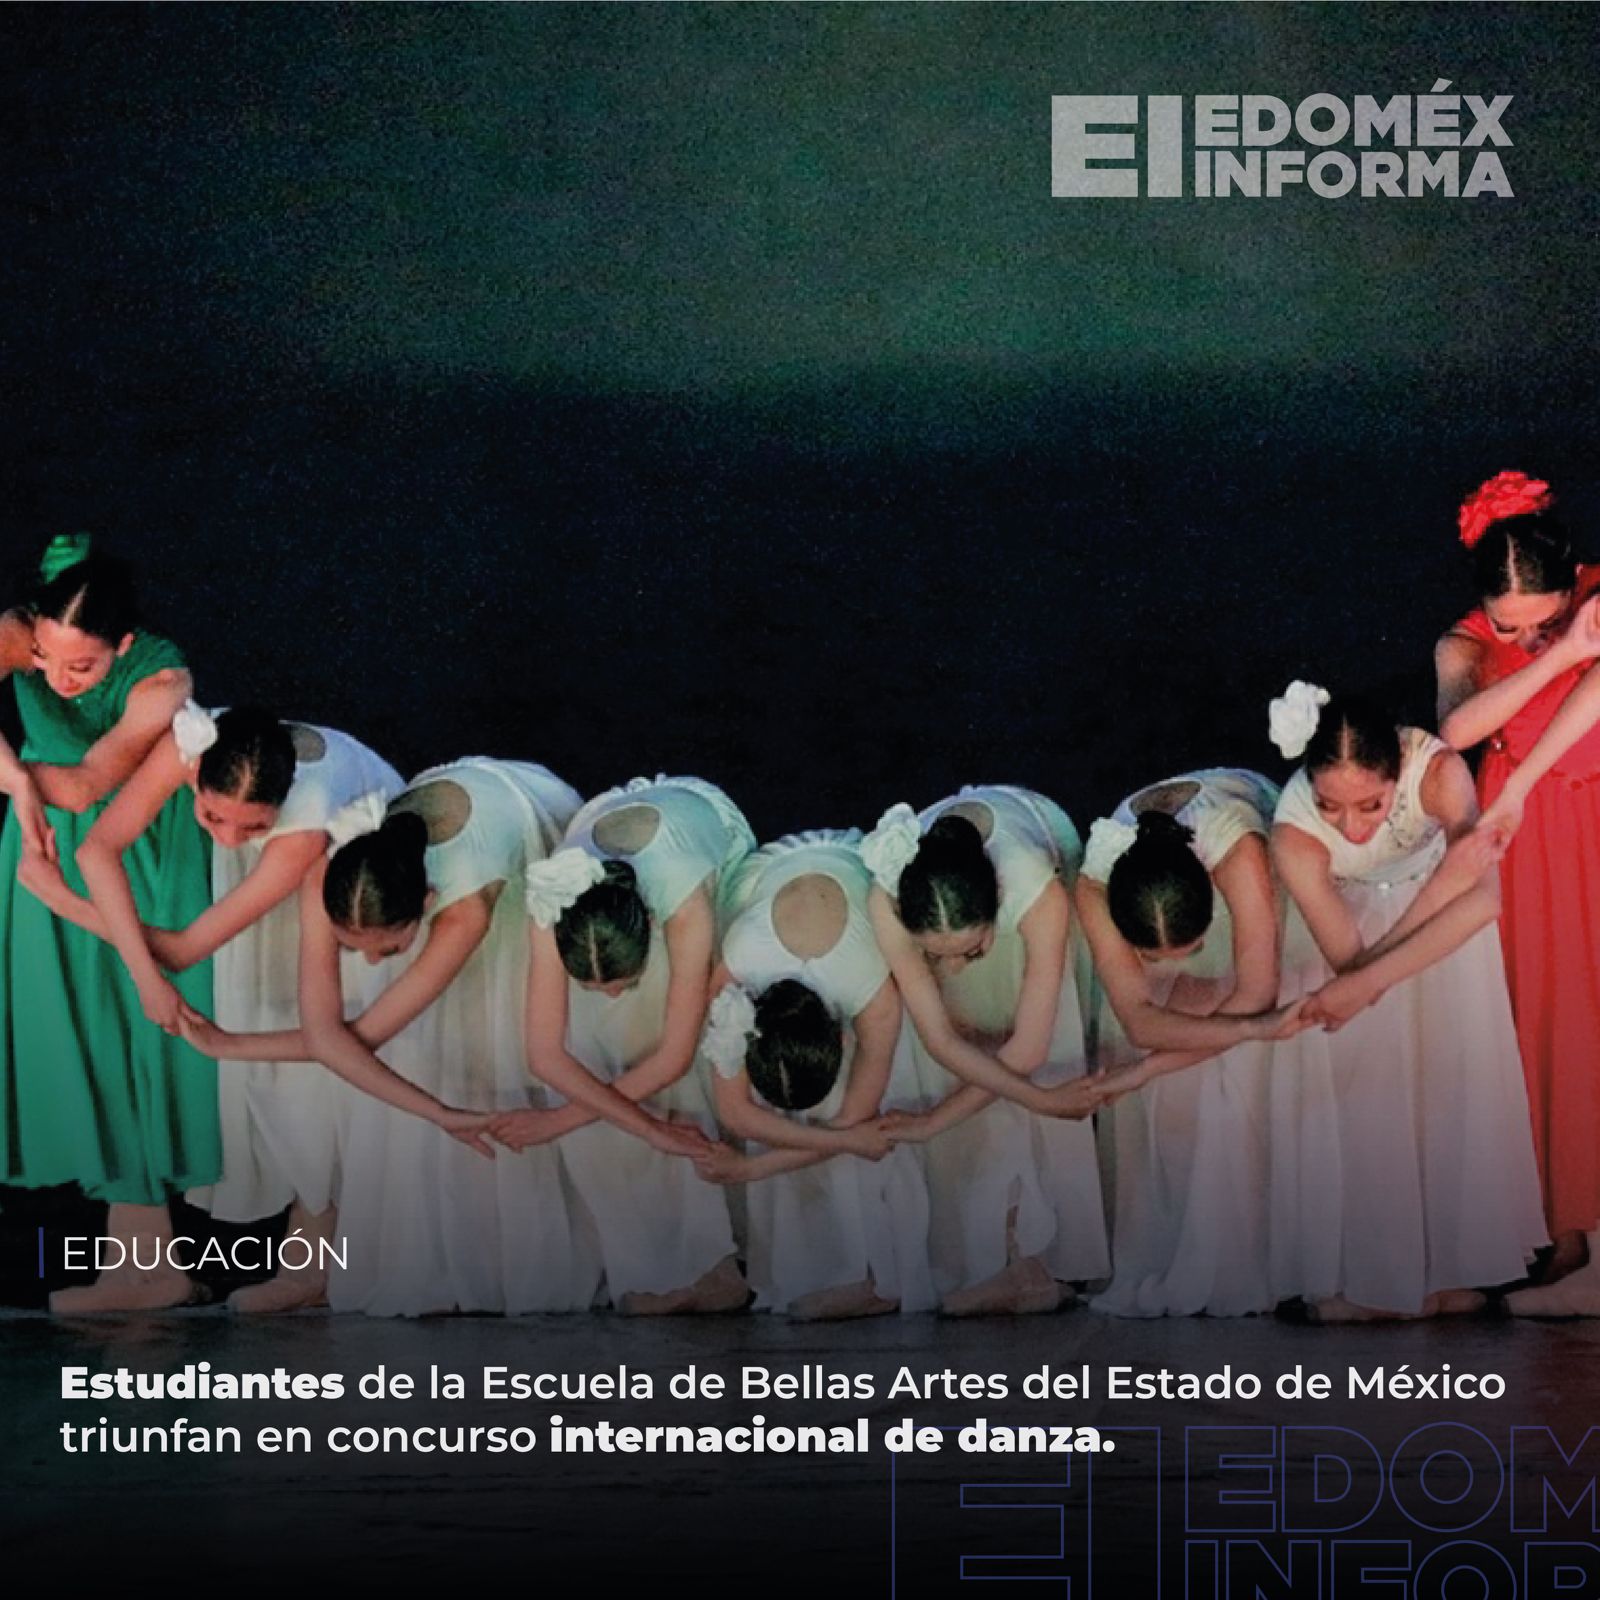 Estudiantes de la Escuela de Bellas Artes del Estado de México triunfan en concurso internacional de danza